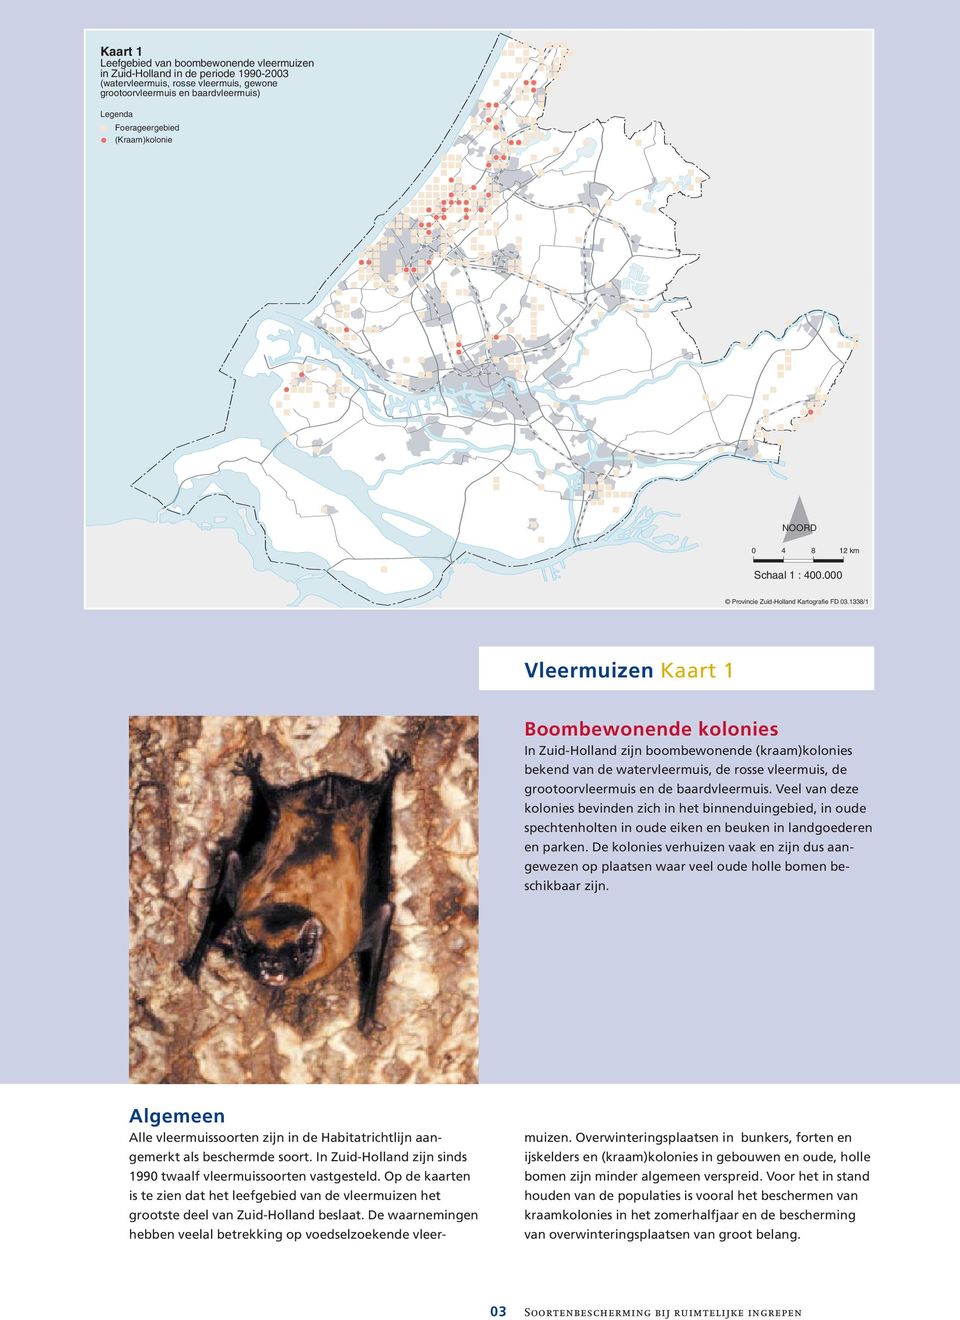 1338/1 Vleermuizen Kaart (kaart 1 3) Gebouwbewonende Boombewonende kolonies In Zuid-Holland zijn vele boombewonende tientallen kraamkolonies (kraam)kolonies bekend van bekend gebouwbewonende van